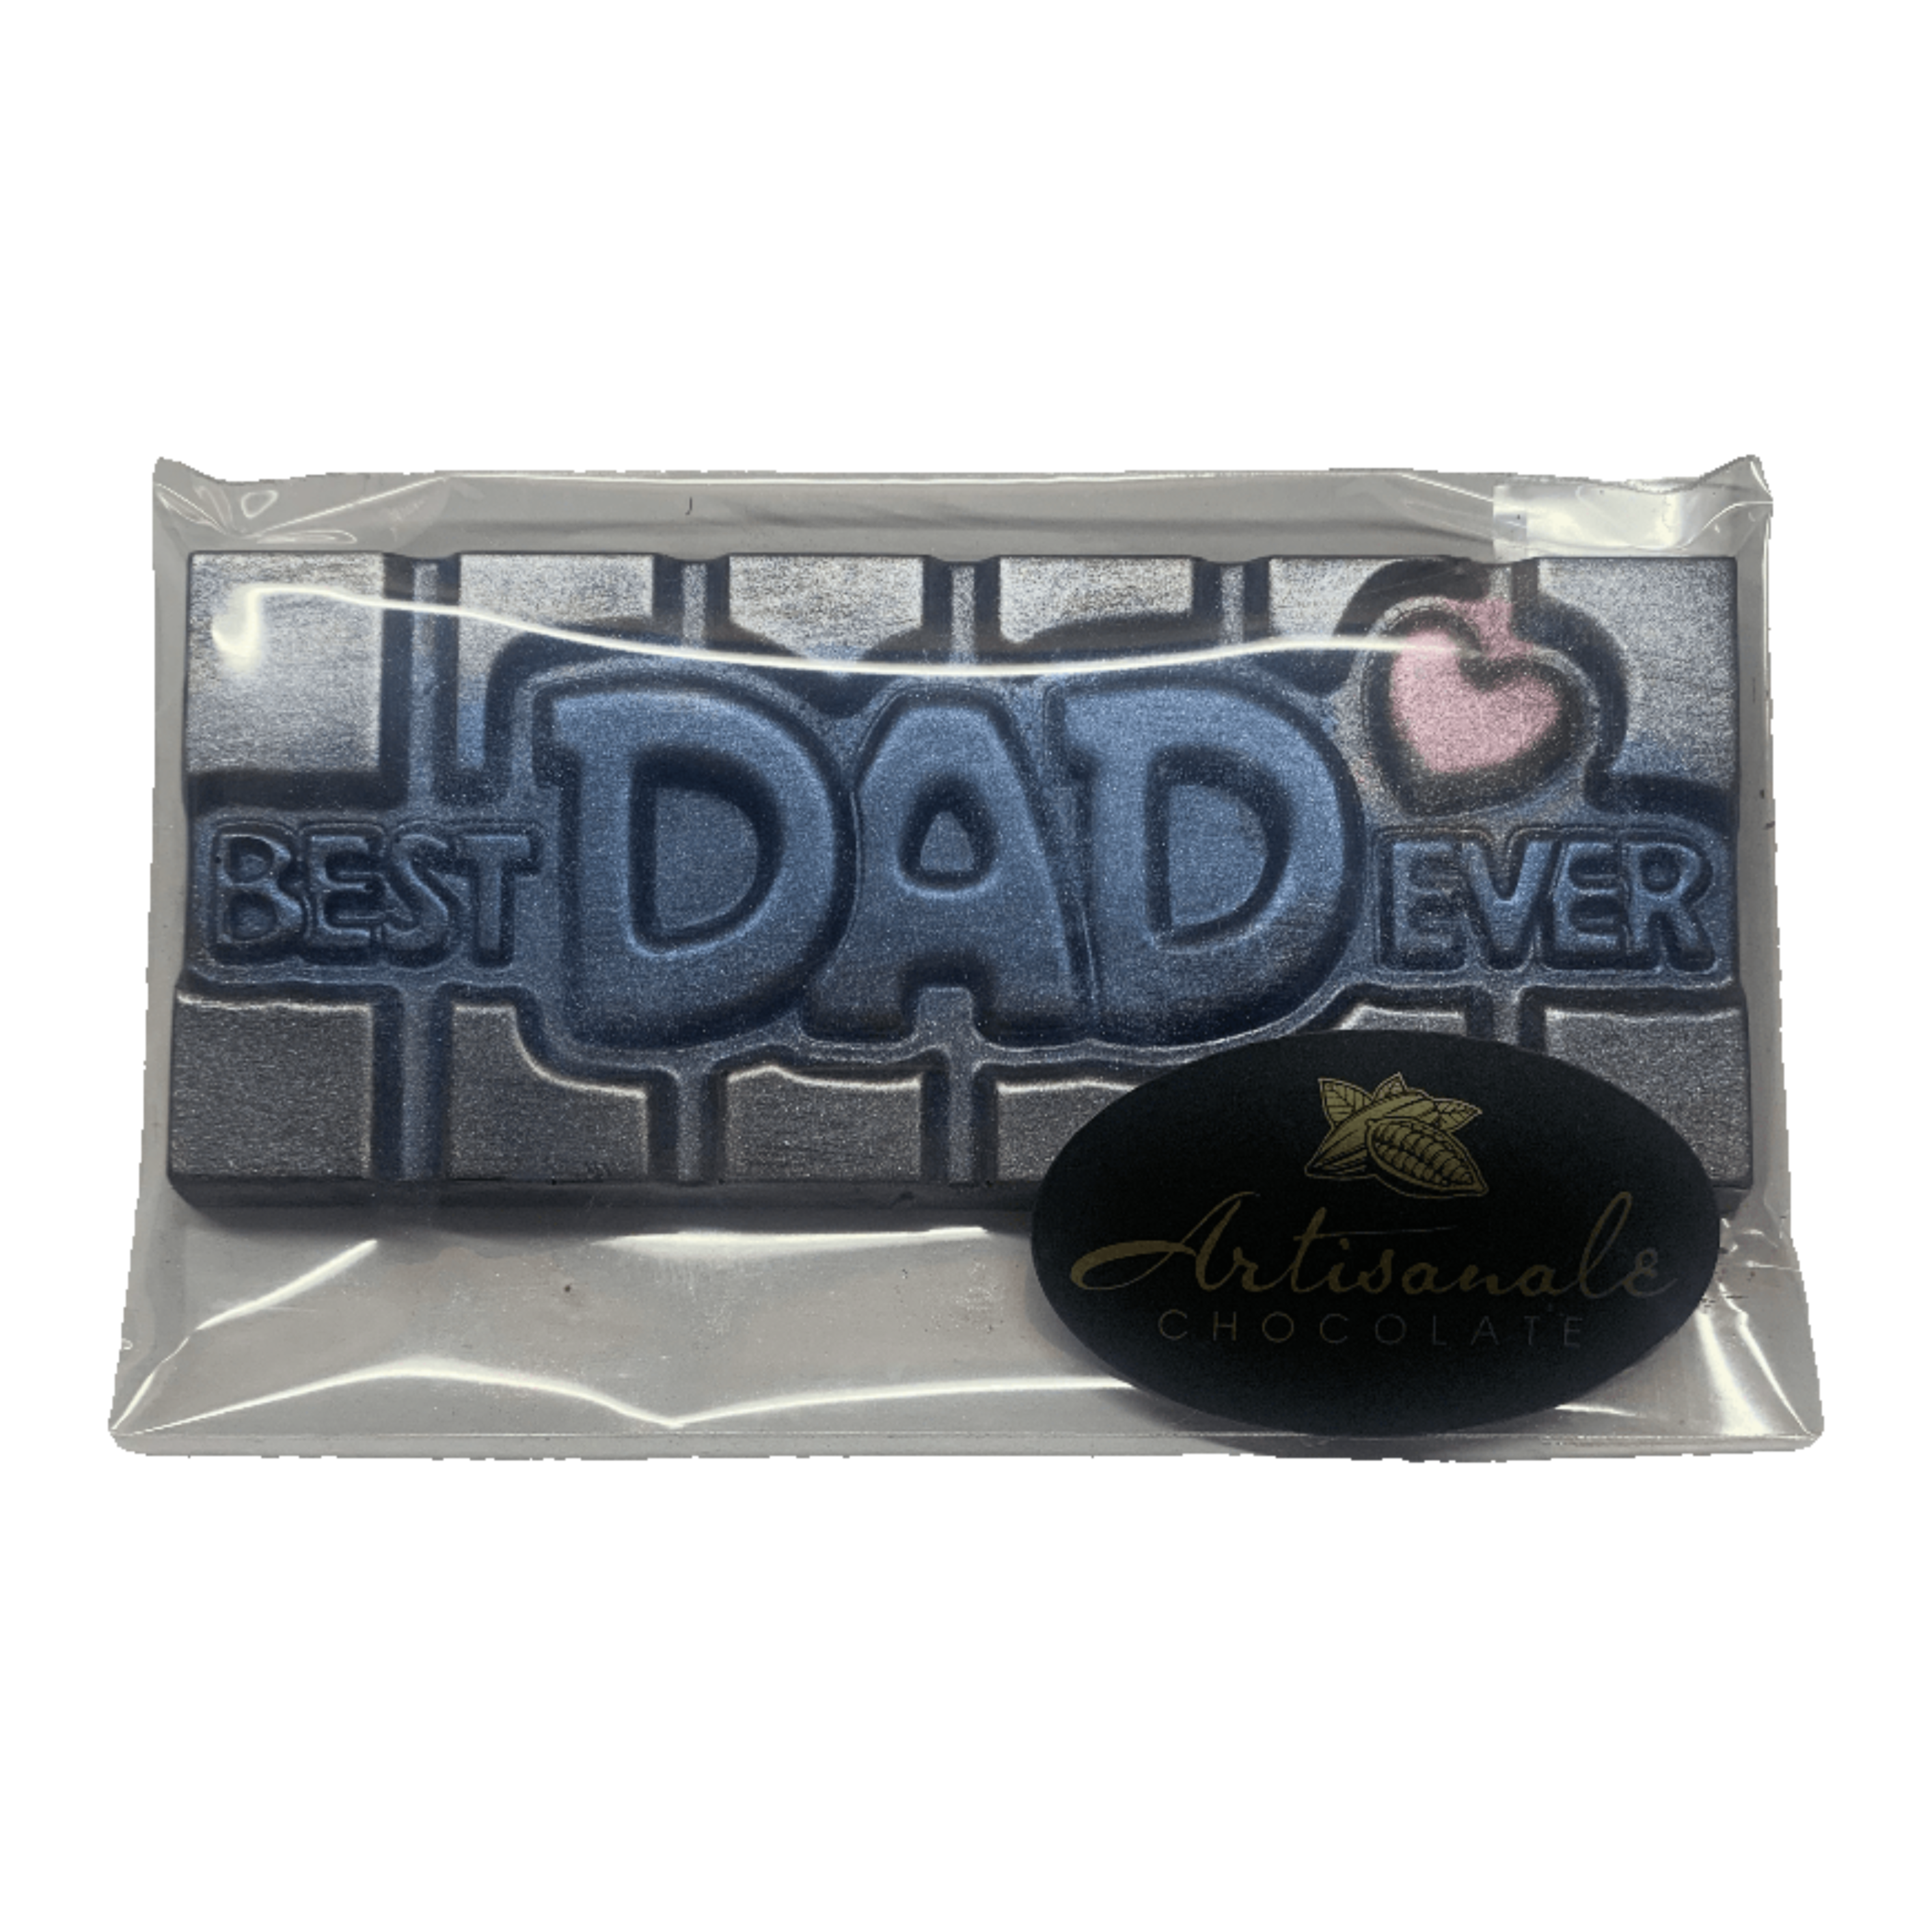 Best Dad Ever - Dark or Milk Chocolate